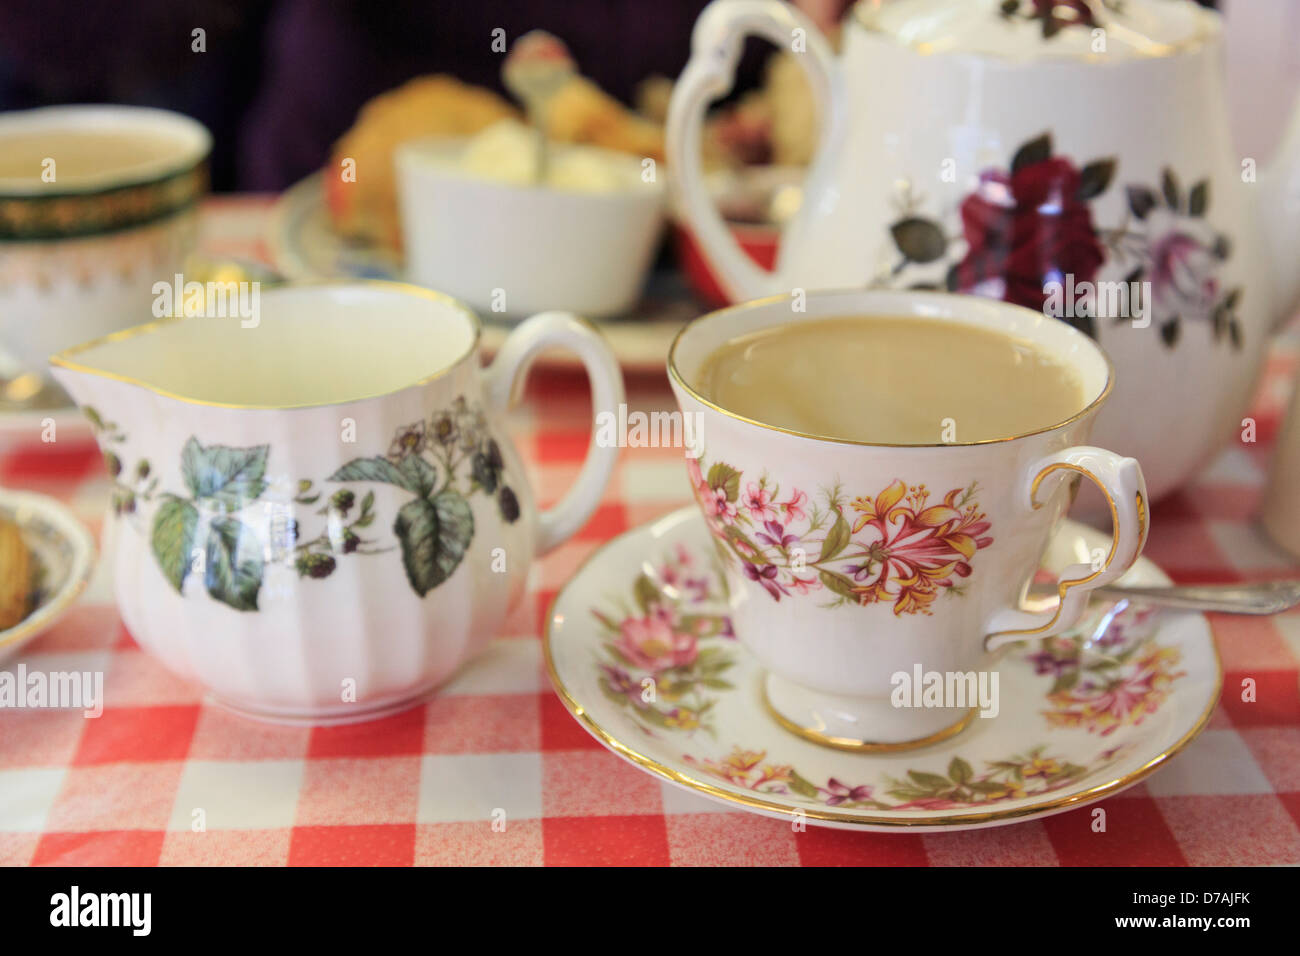 Der traditionelle englische Nachmittagstee mit blumigen China Teetasse mit Untertasse auf einer rot-weißen Tischdecke in einem Café. England Großbritannien Großbritannien Stockfoto